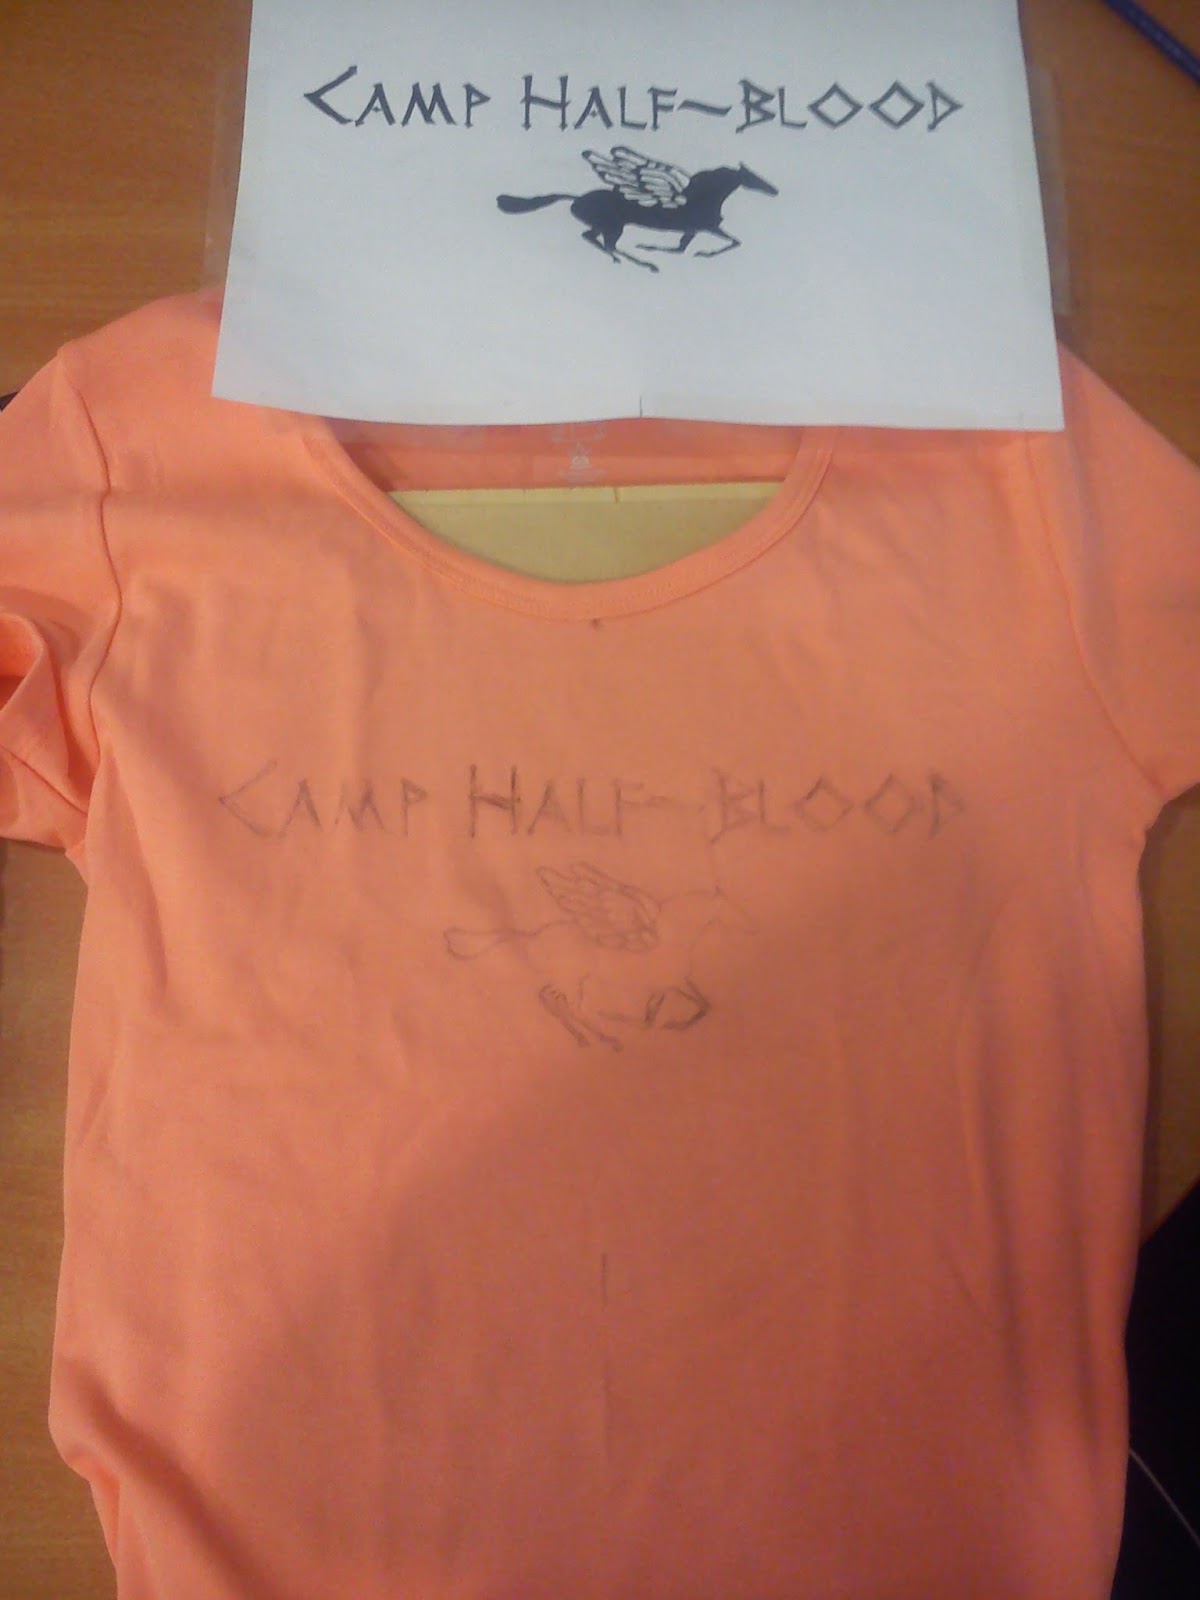 Camp Half-Blood T-Shirts by daynjerzone on DeviantArt